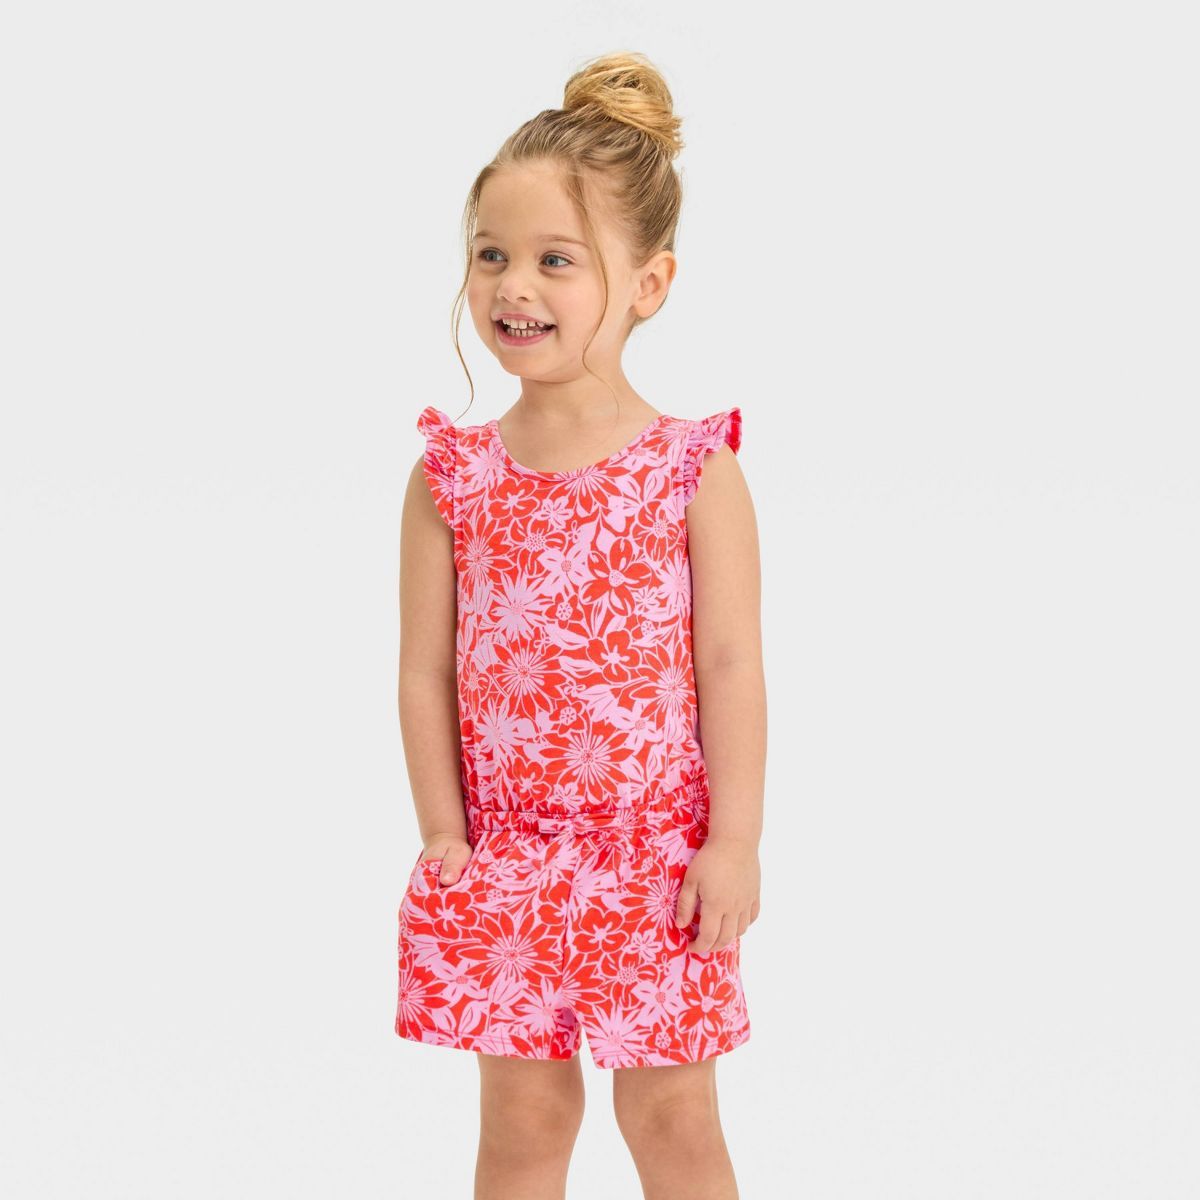 Toddler Girls' Coral Floral Romper - Cat & Jack™ Carol Red | Target